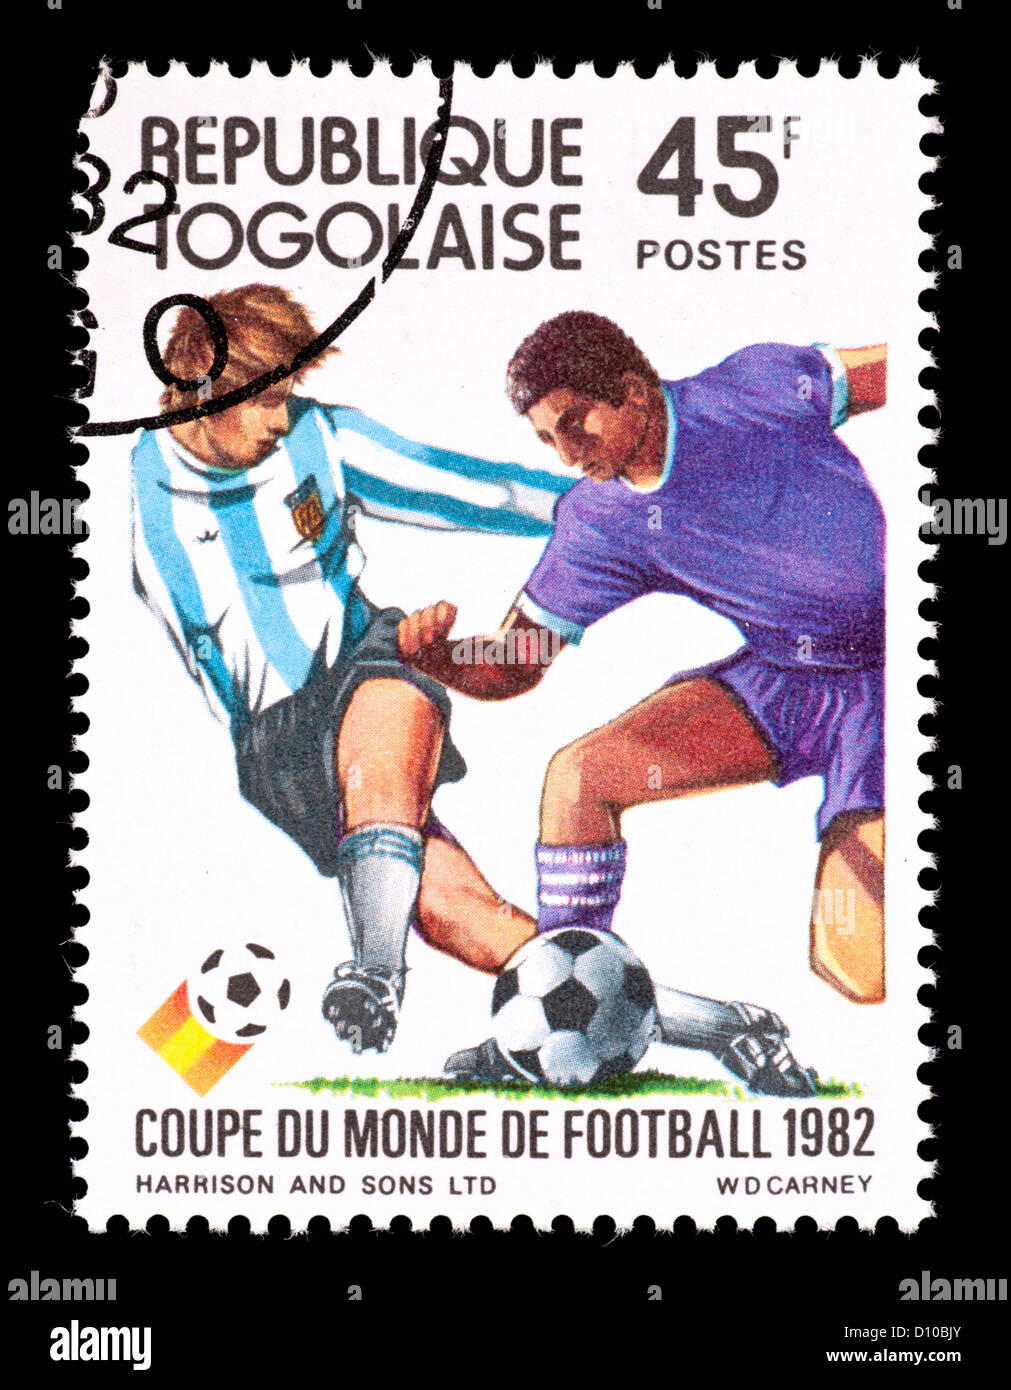 Timbre-poste du Togo représentant deux joueurs de football, émis pour la Coupe du Monde de football 1982 (1982). Banque D'Images